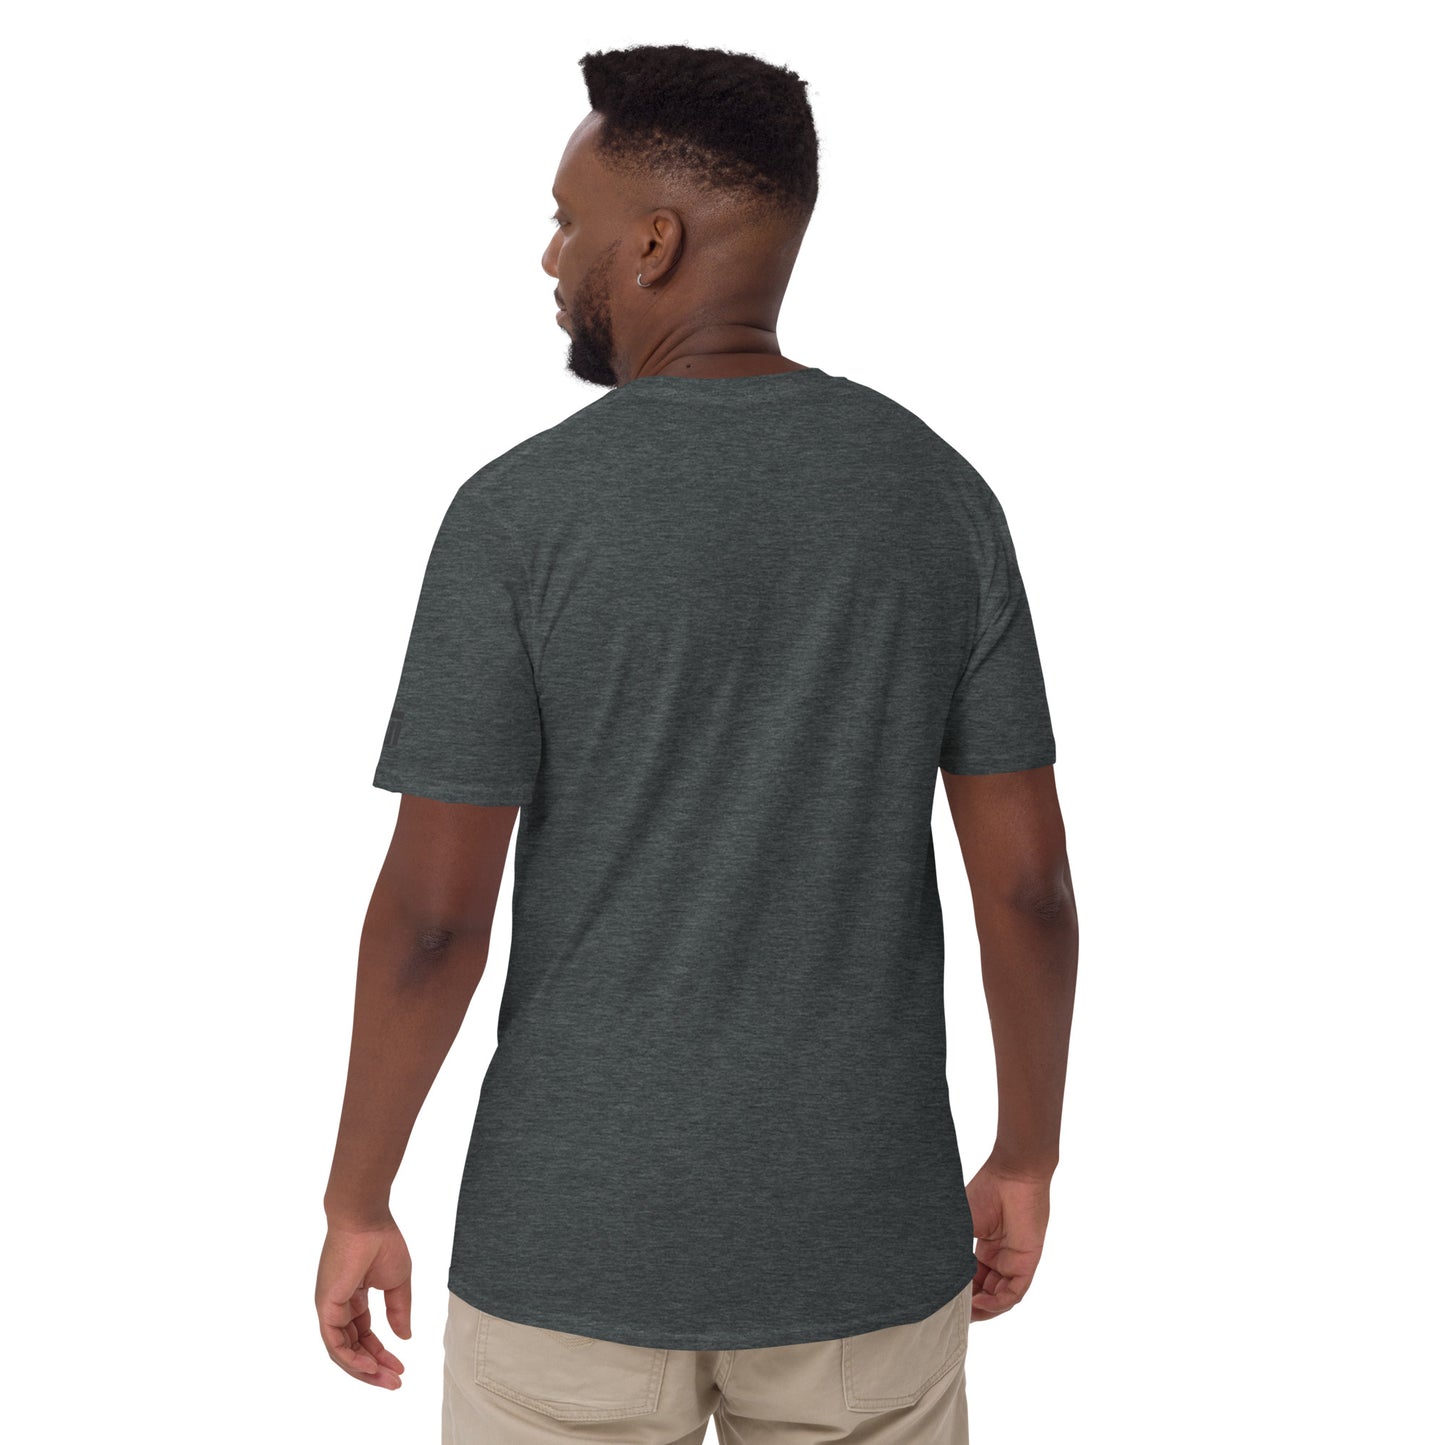 Camiseta unissex com mangas curtas